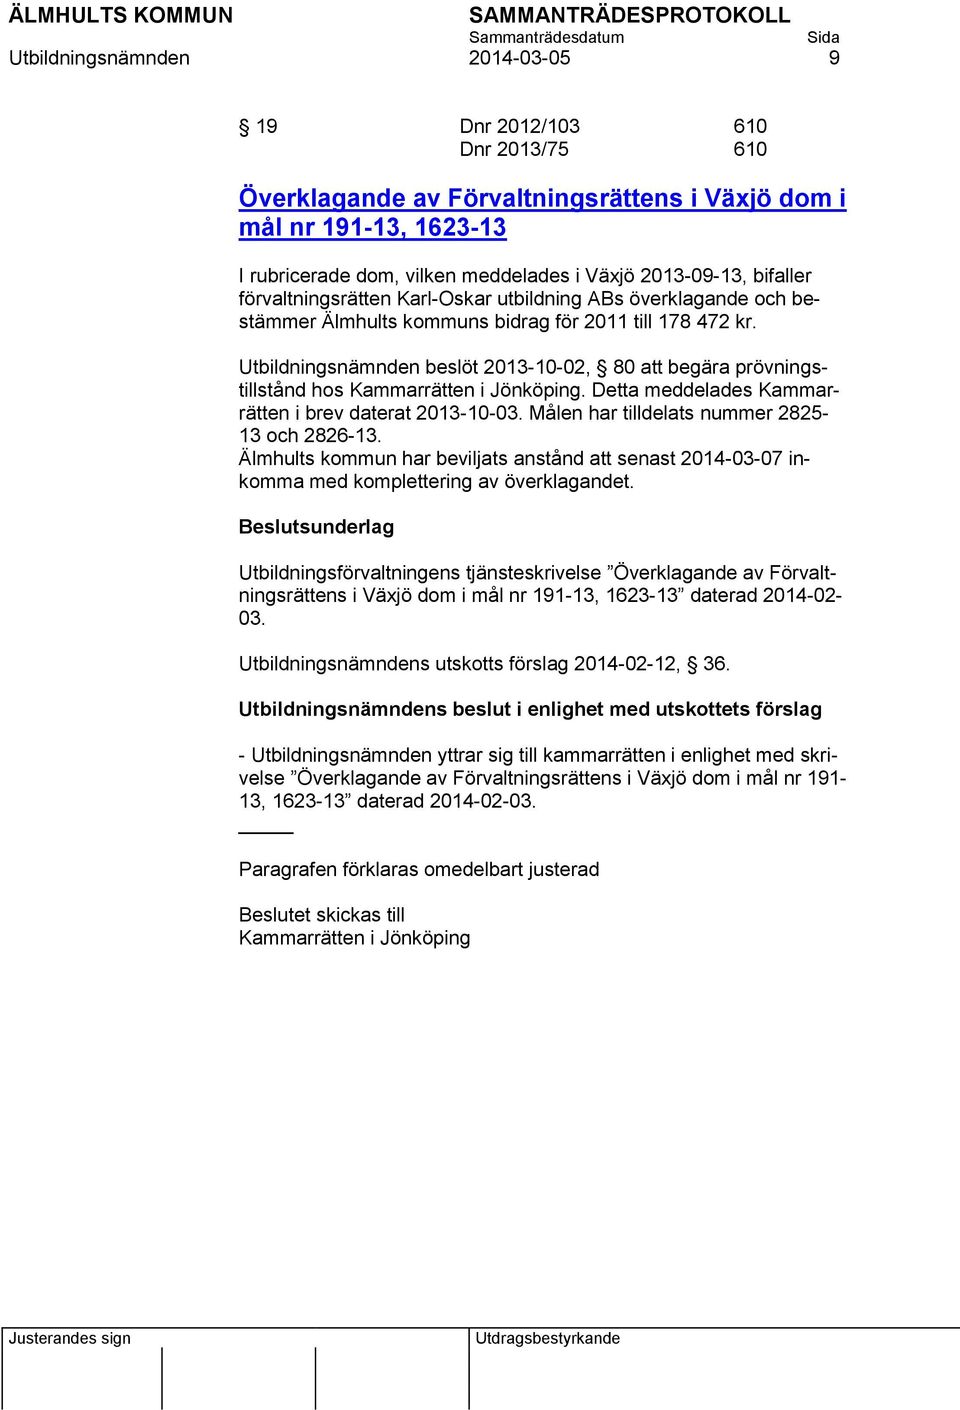 Utbildningsnämnden beslöt 2013-10-02, 80 att begära prövningstillstånd hos Kammarrätten i Jönköping. Detta meddelades Kammarrätten i brev daterat 2013-10-03.